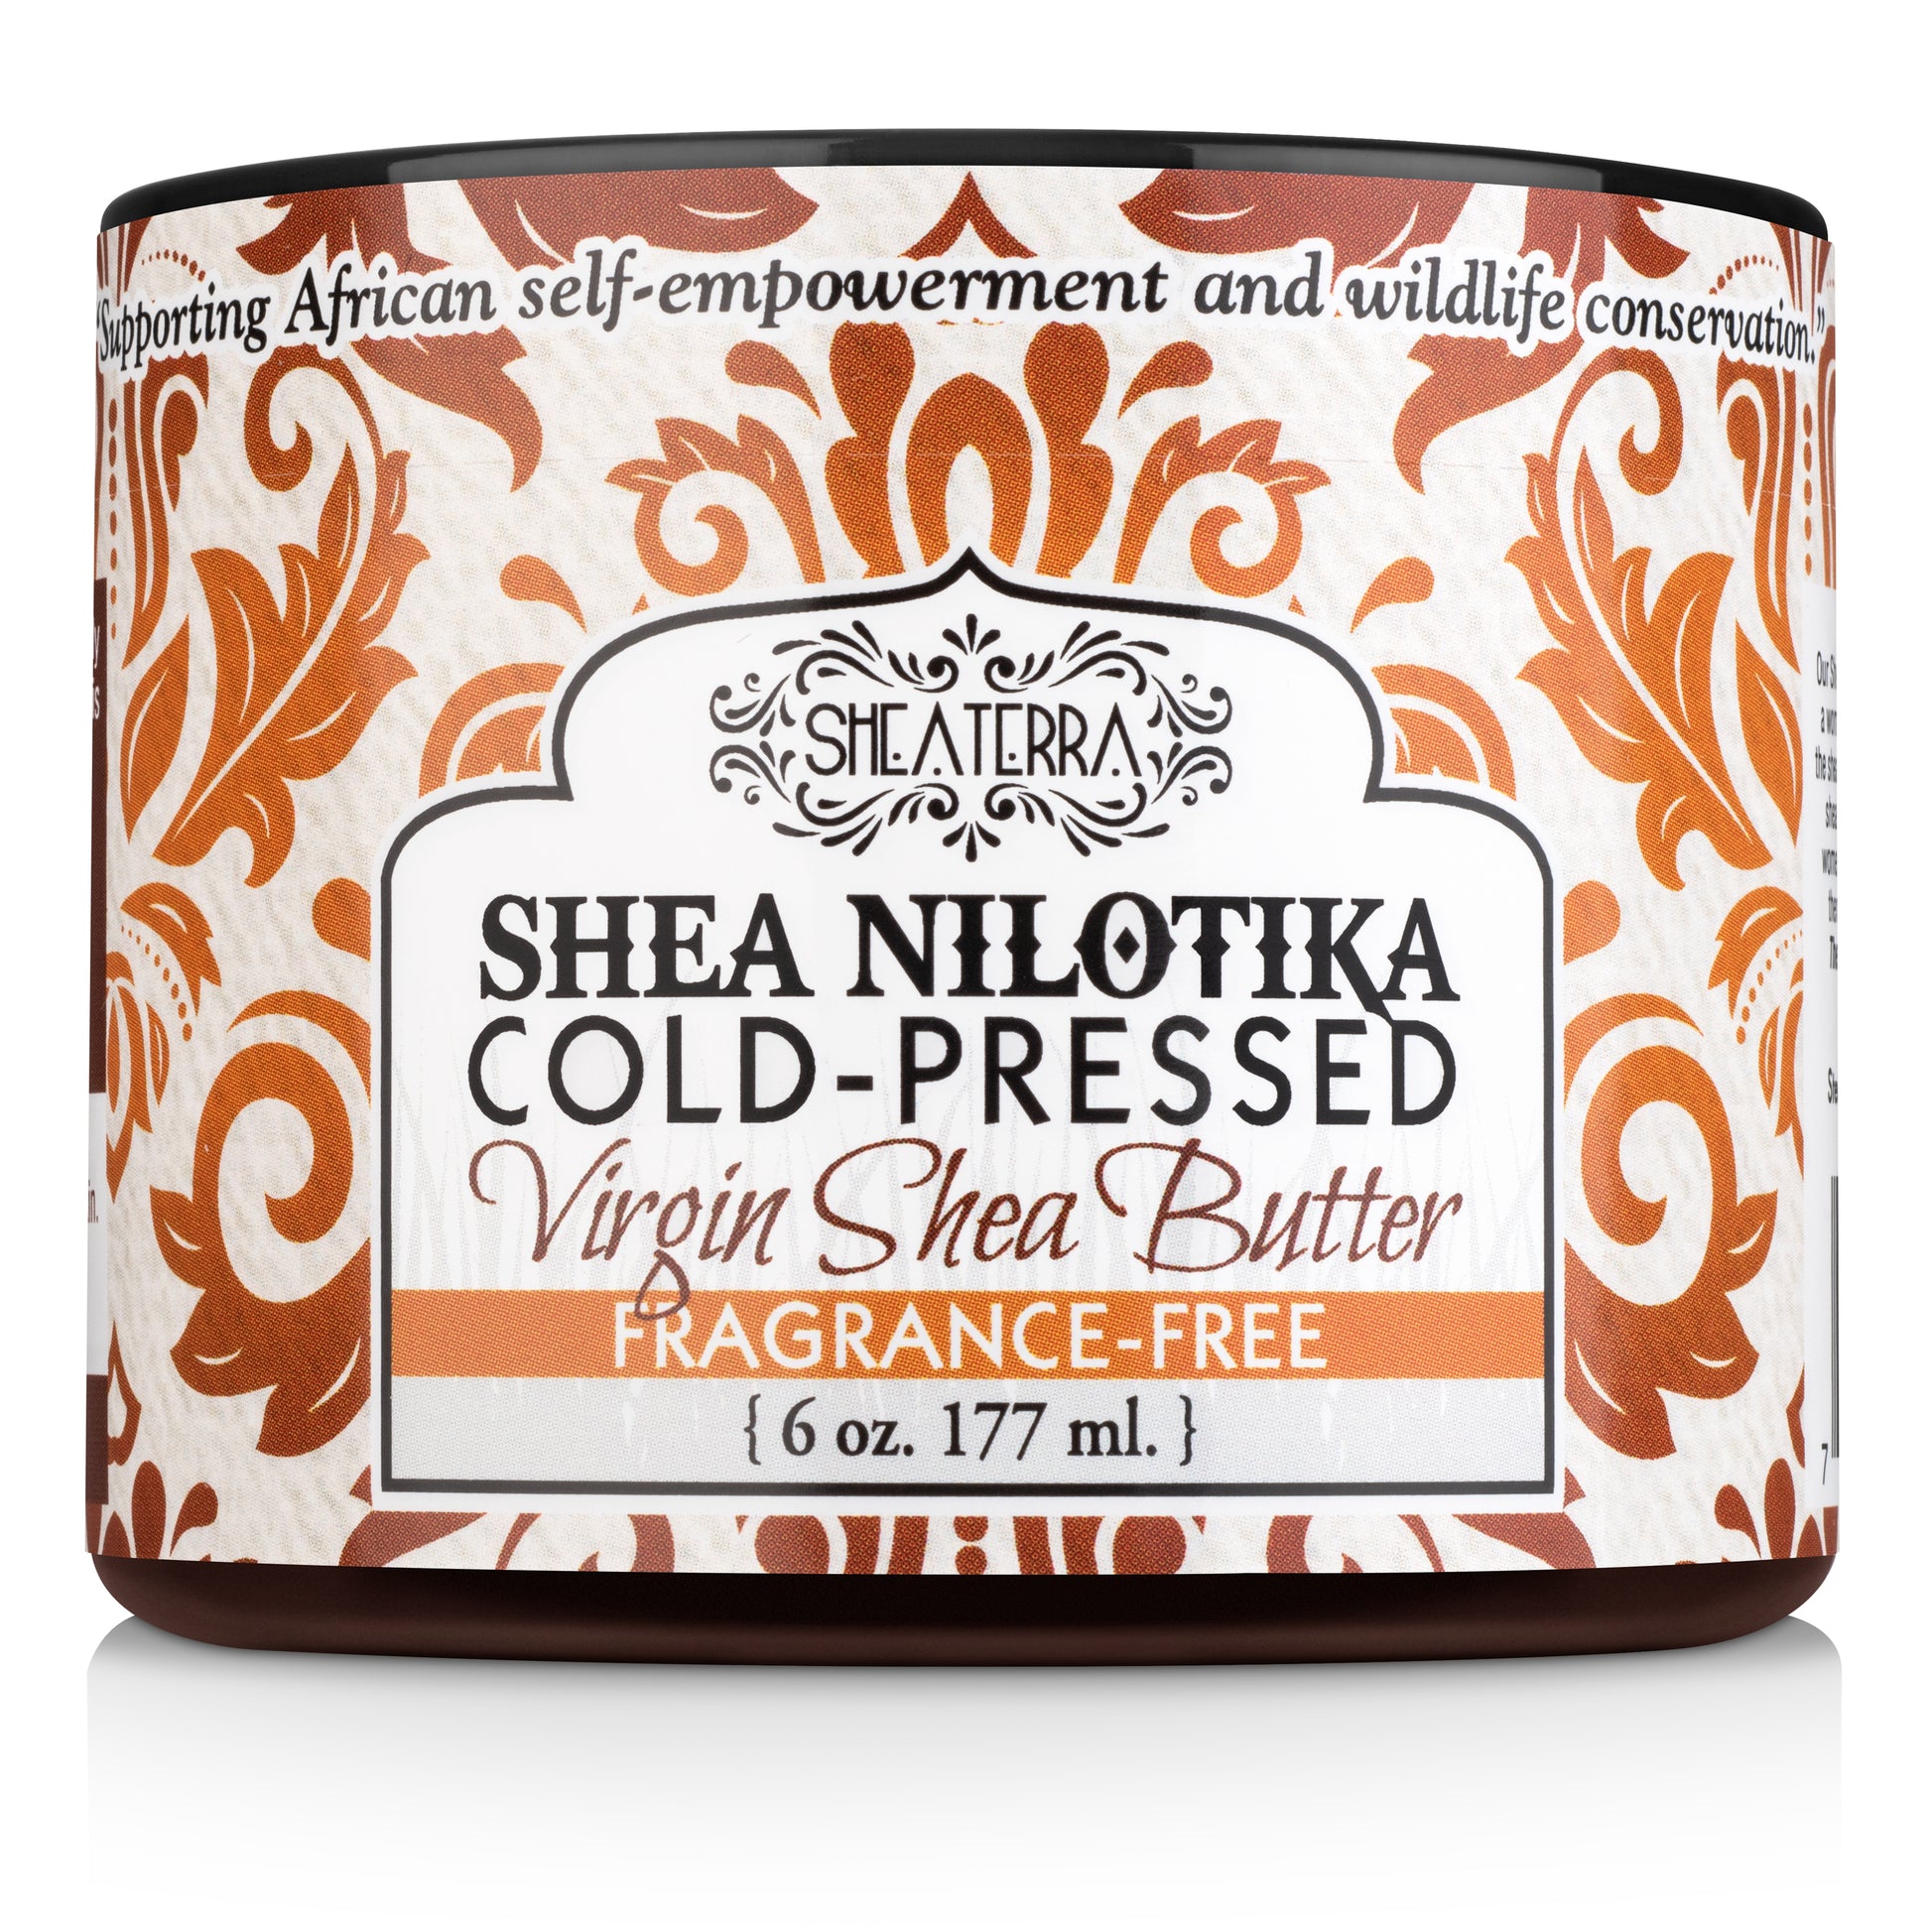 The Natural Healing Properties of Shea Butter